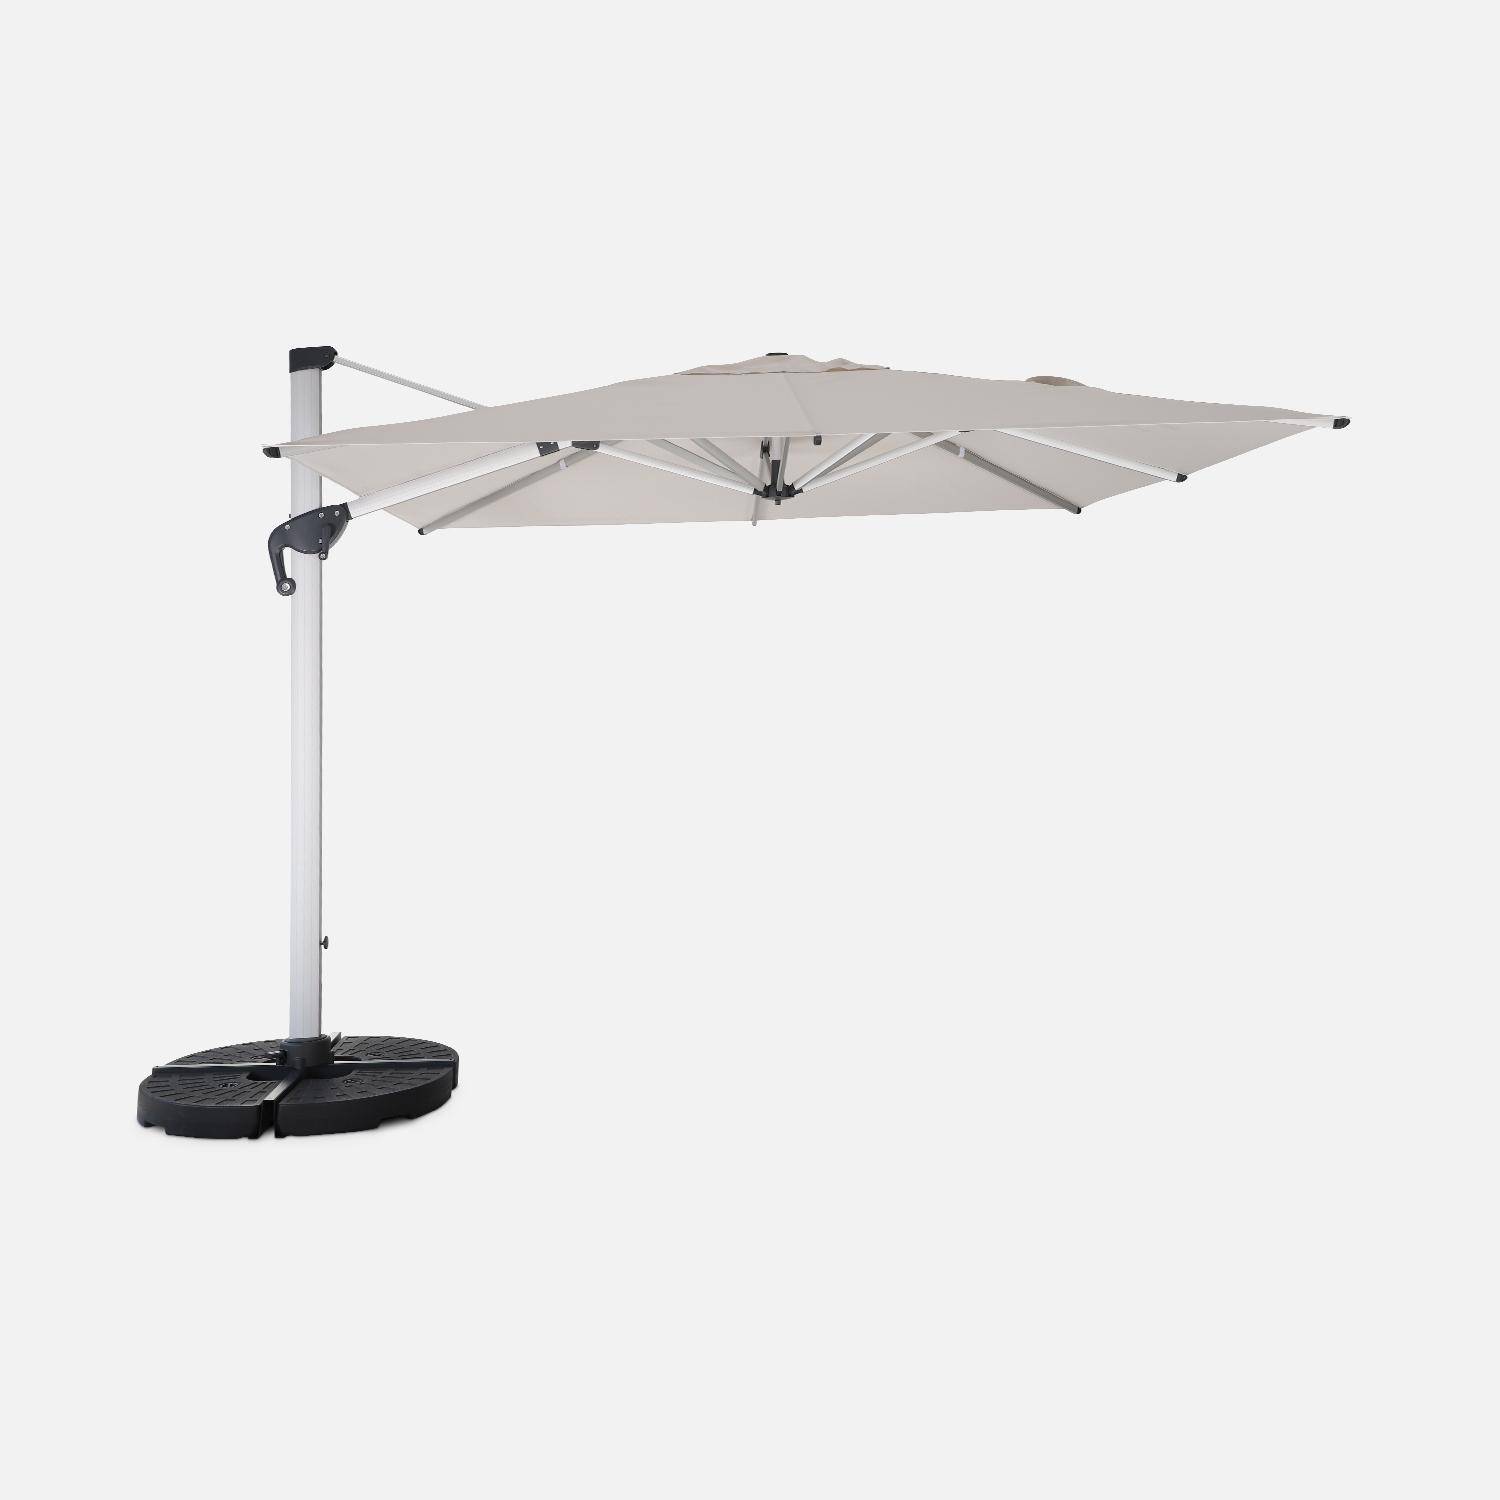 Topkwaliteit parasol, 3x3m, beige polyester doek, geanodiseerd aluminium frame, hoes inbegrepen,sweeek,Photo2